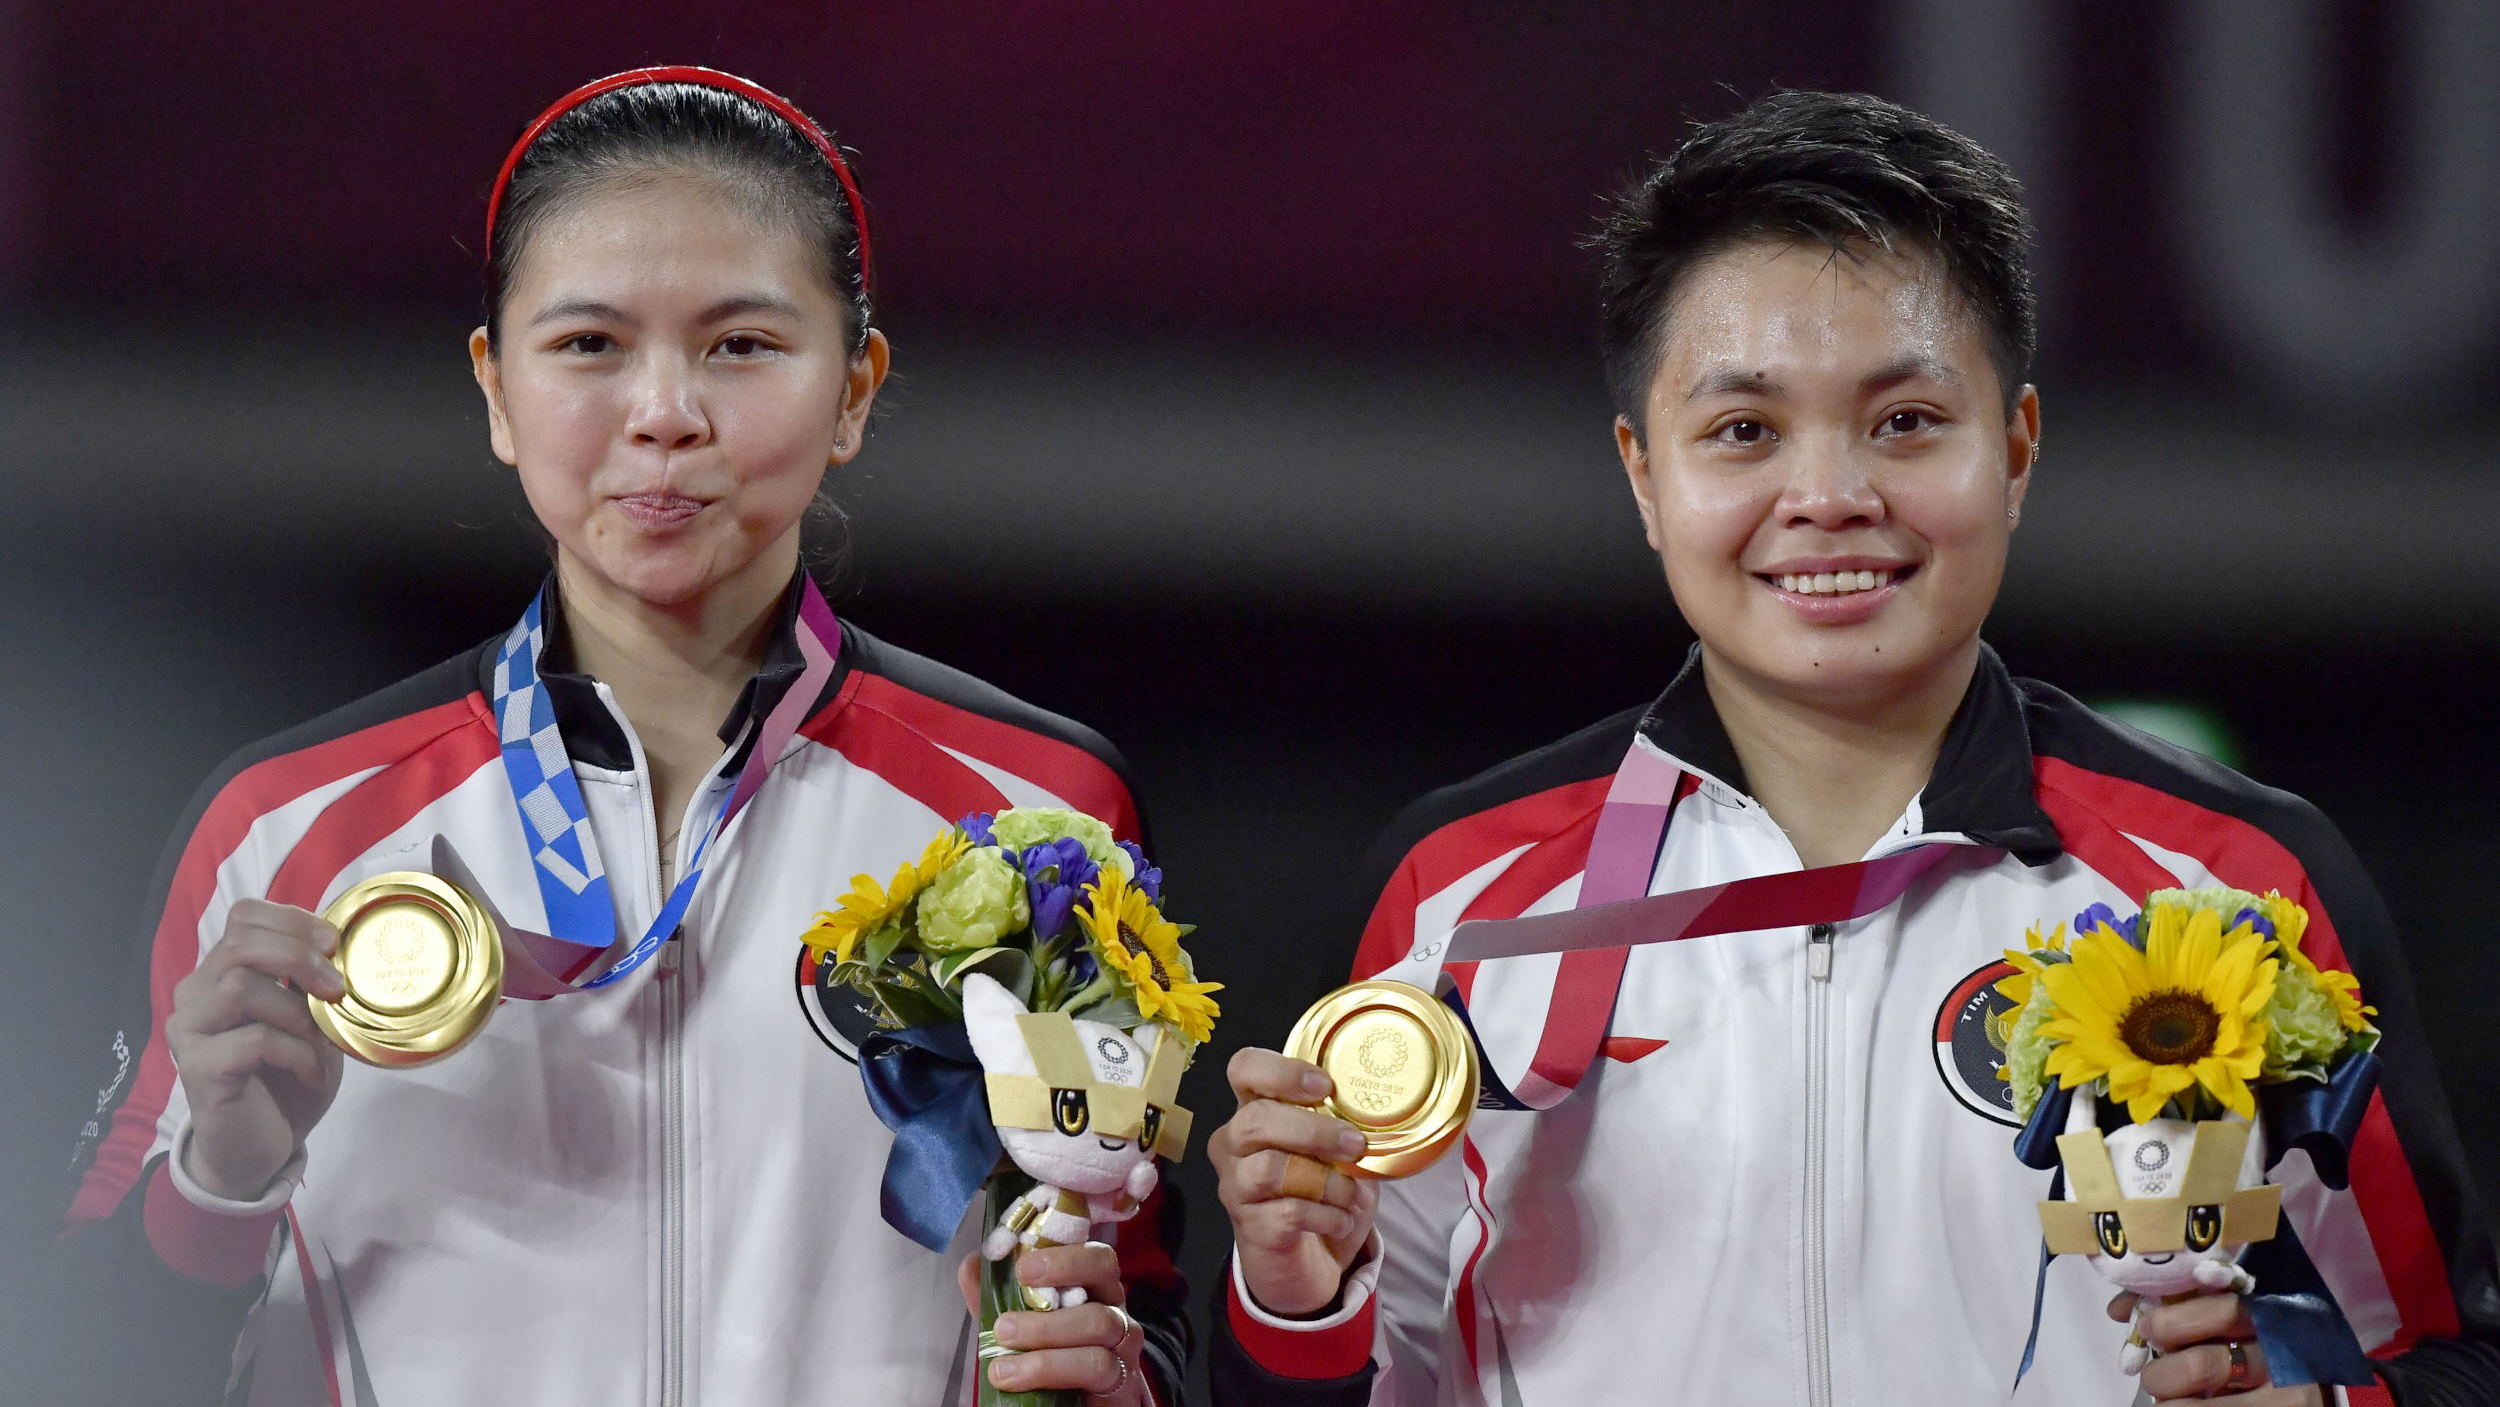 Perolehan medali indonesia